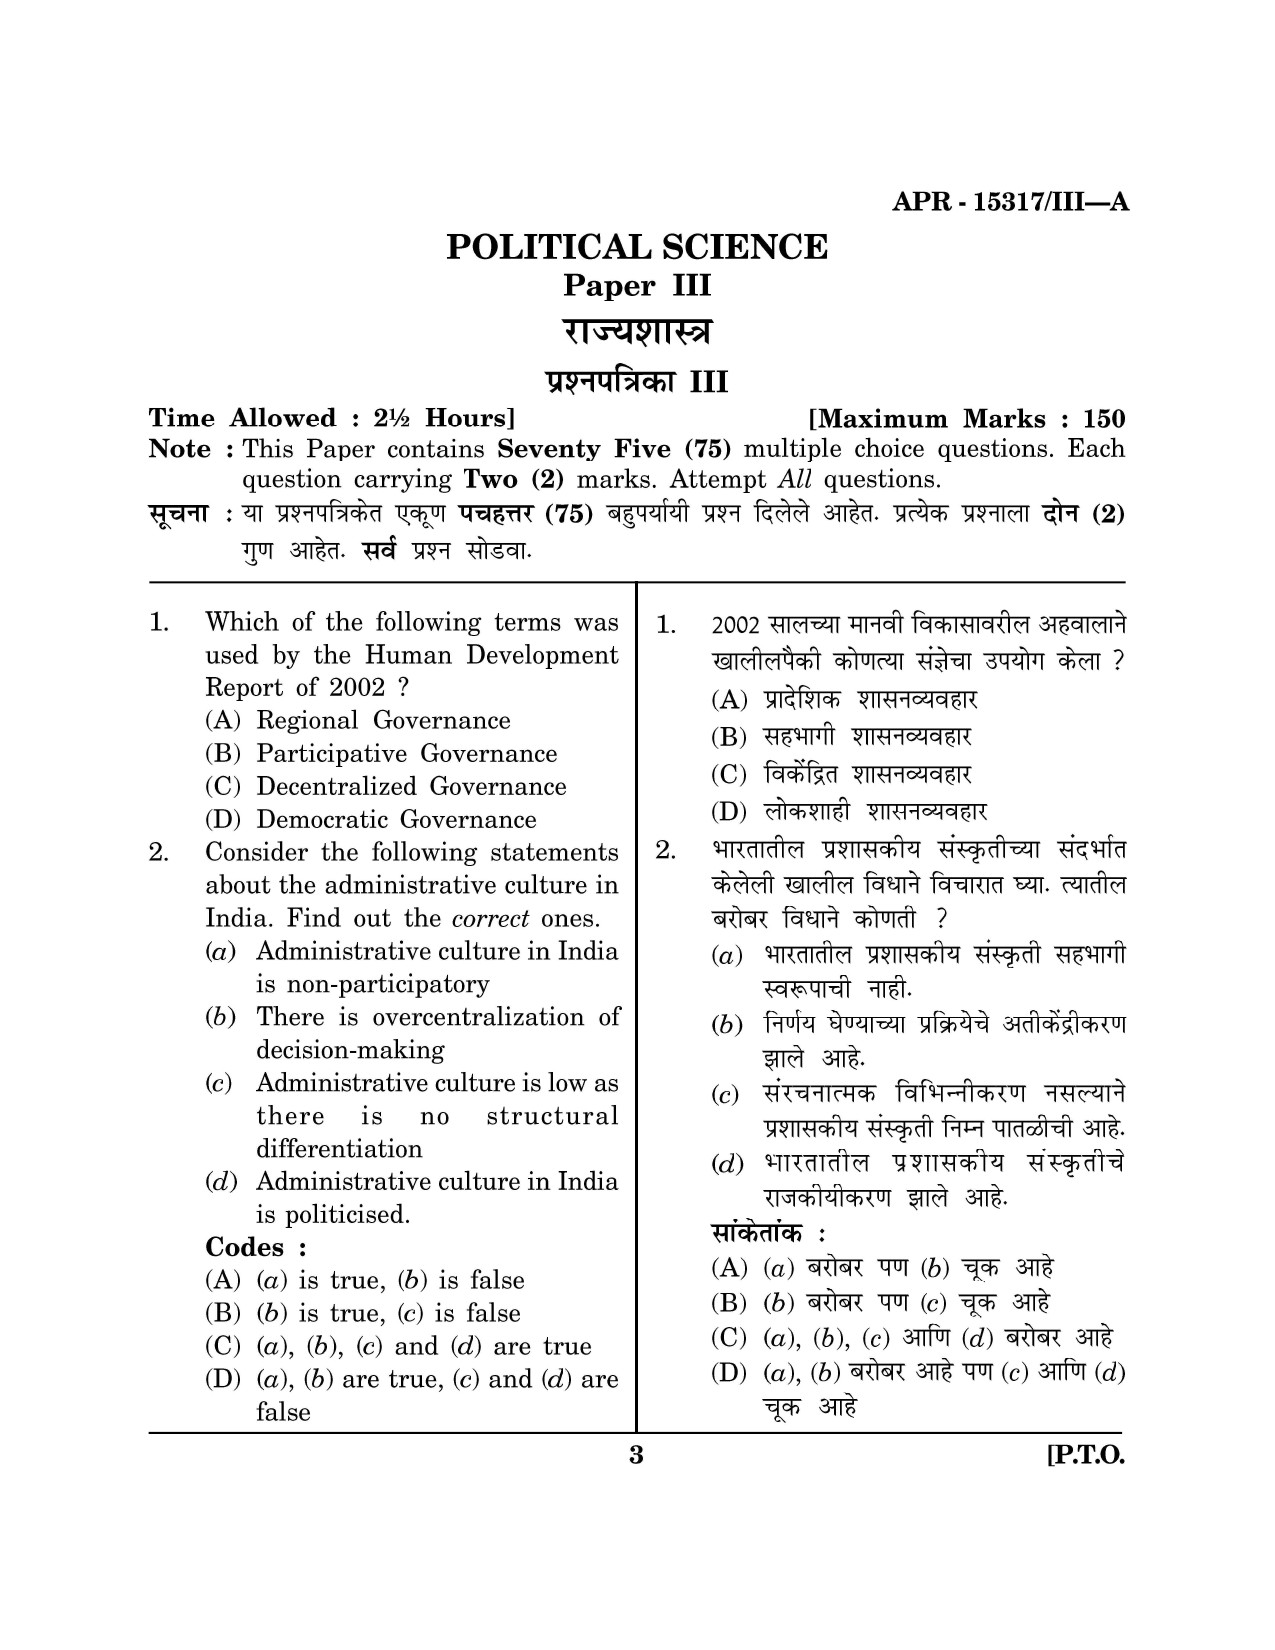 Maharashtra SET Political Science Question Paper III April 2017 2